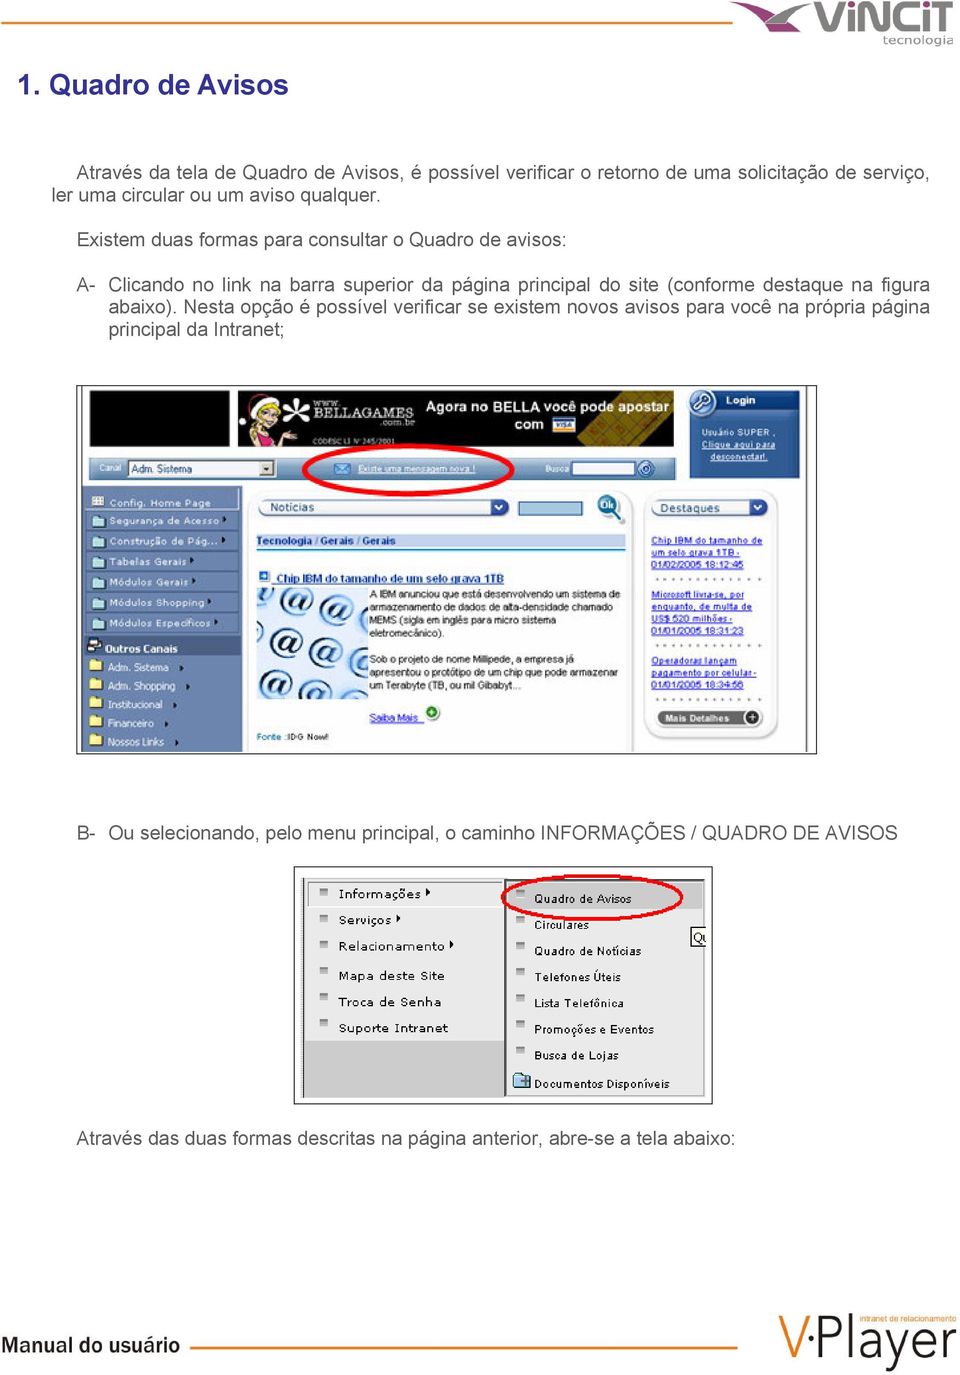 Existem duas formas para consultar o Quadro de avisos: A- Clicando no link na barra superior da página principal do site (conforme destaque na